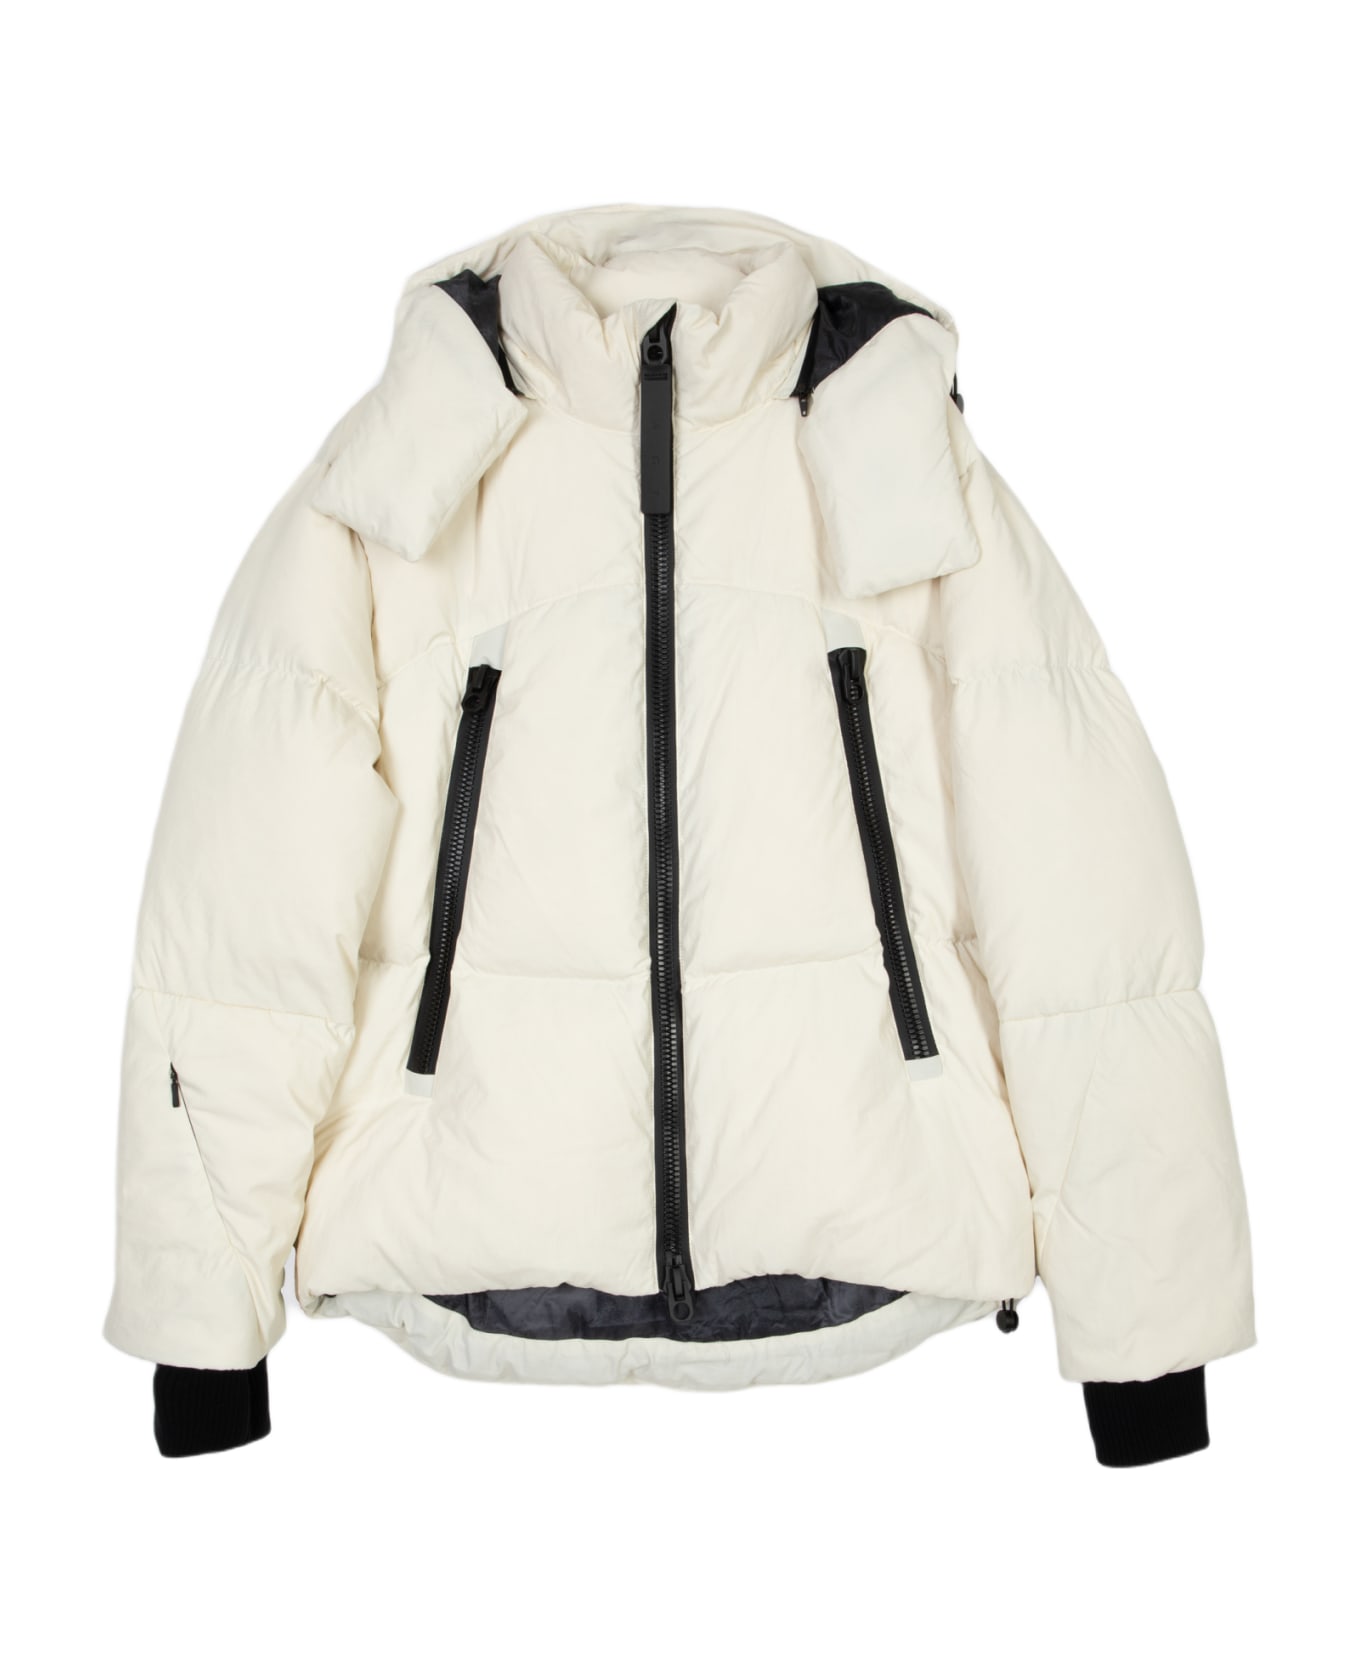 JG1 Perla Off white nylon hooded puffer jacket - Perla